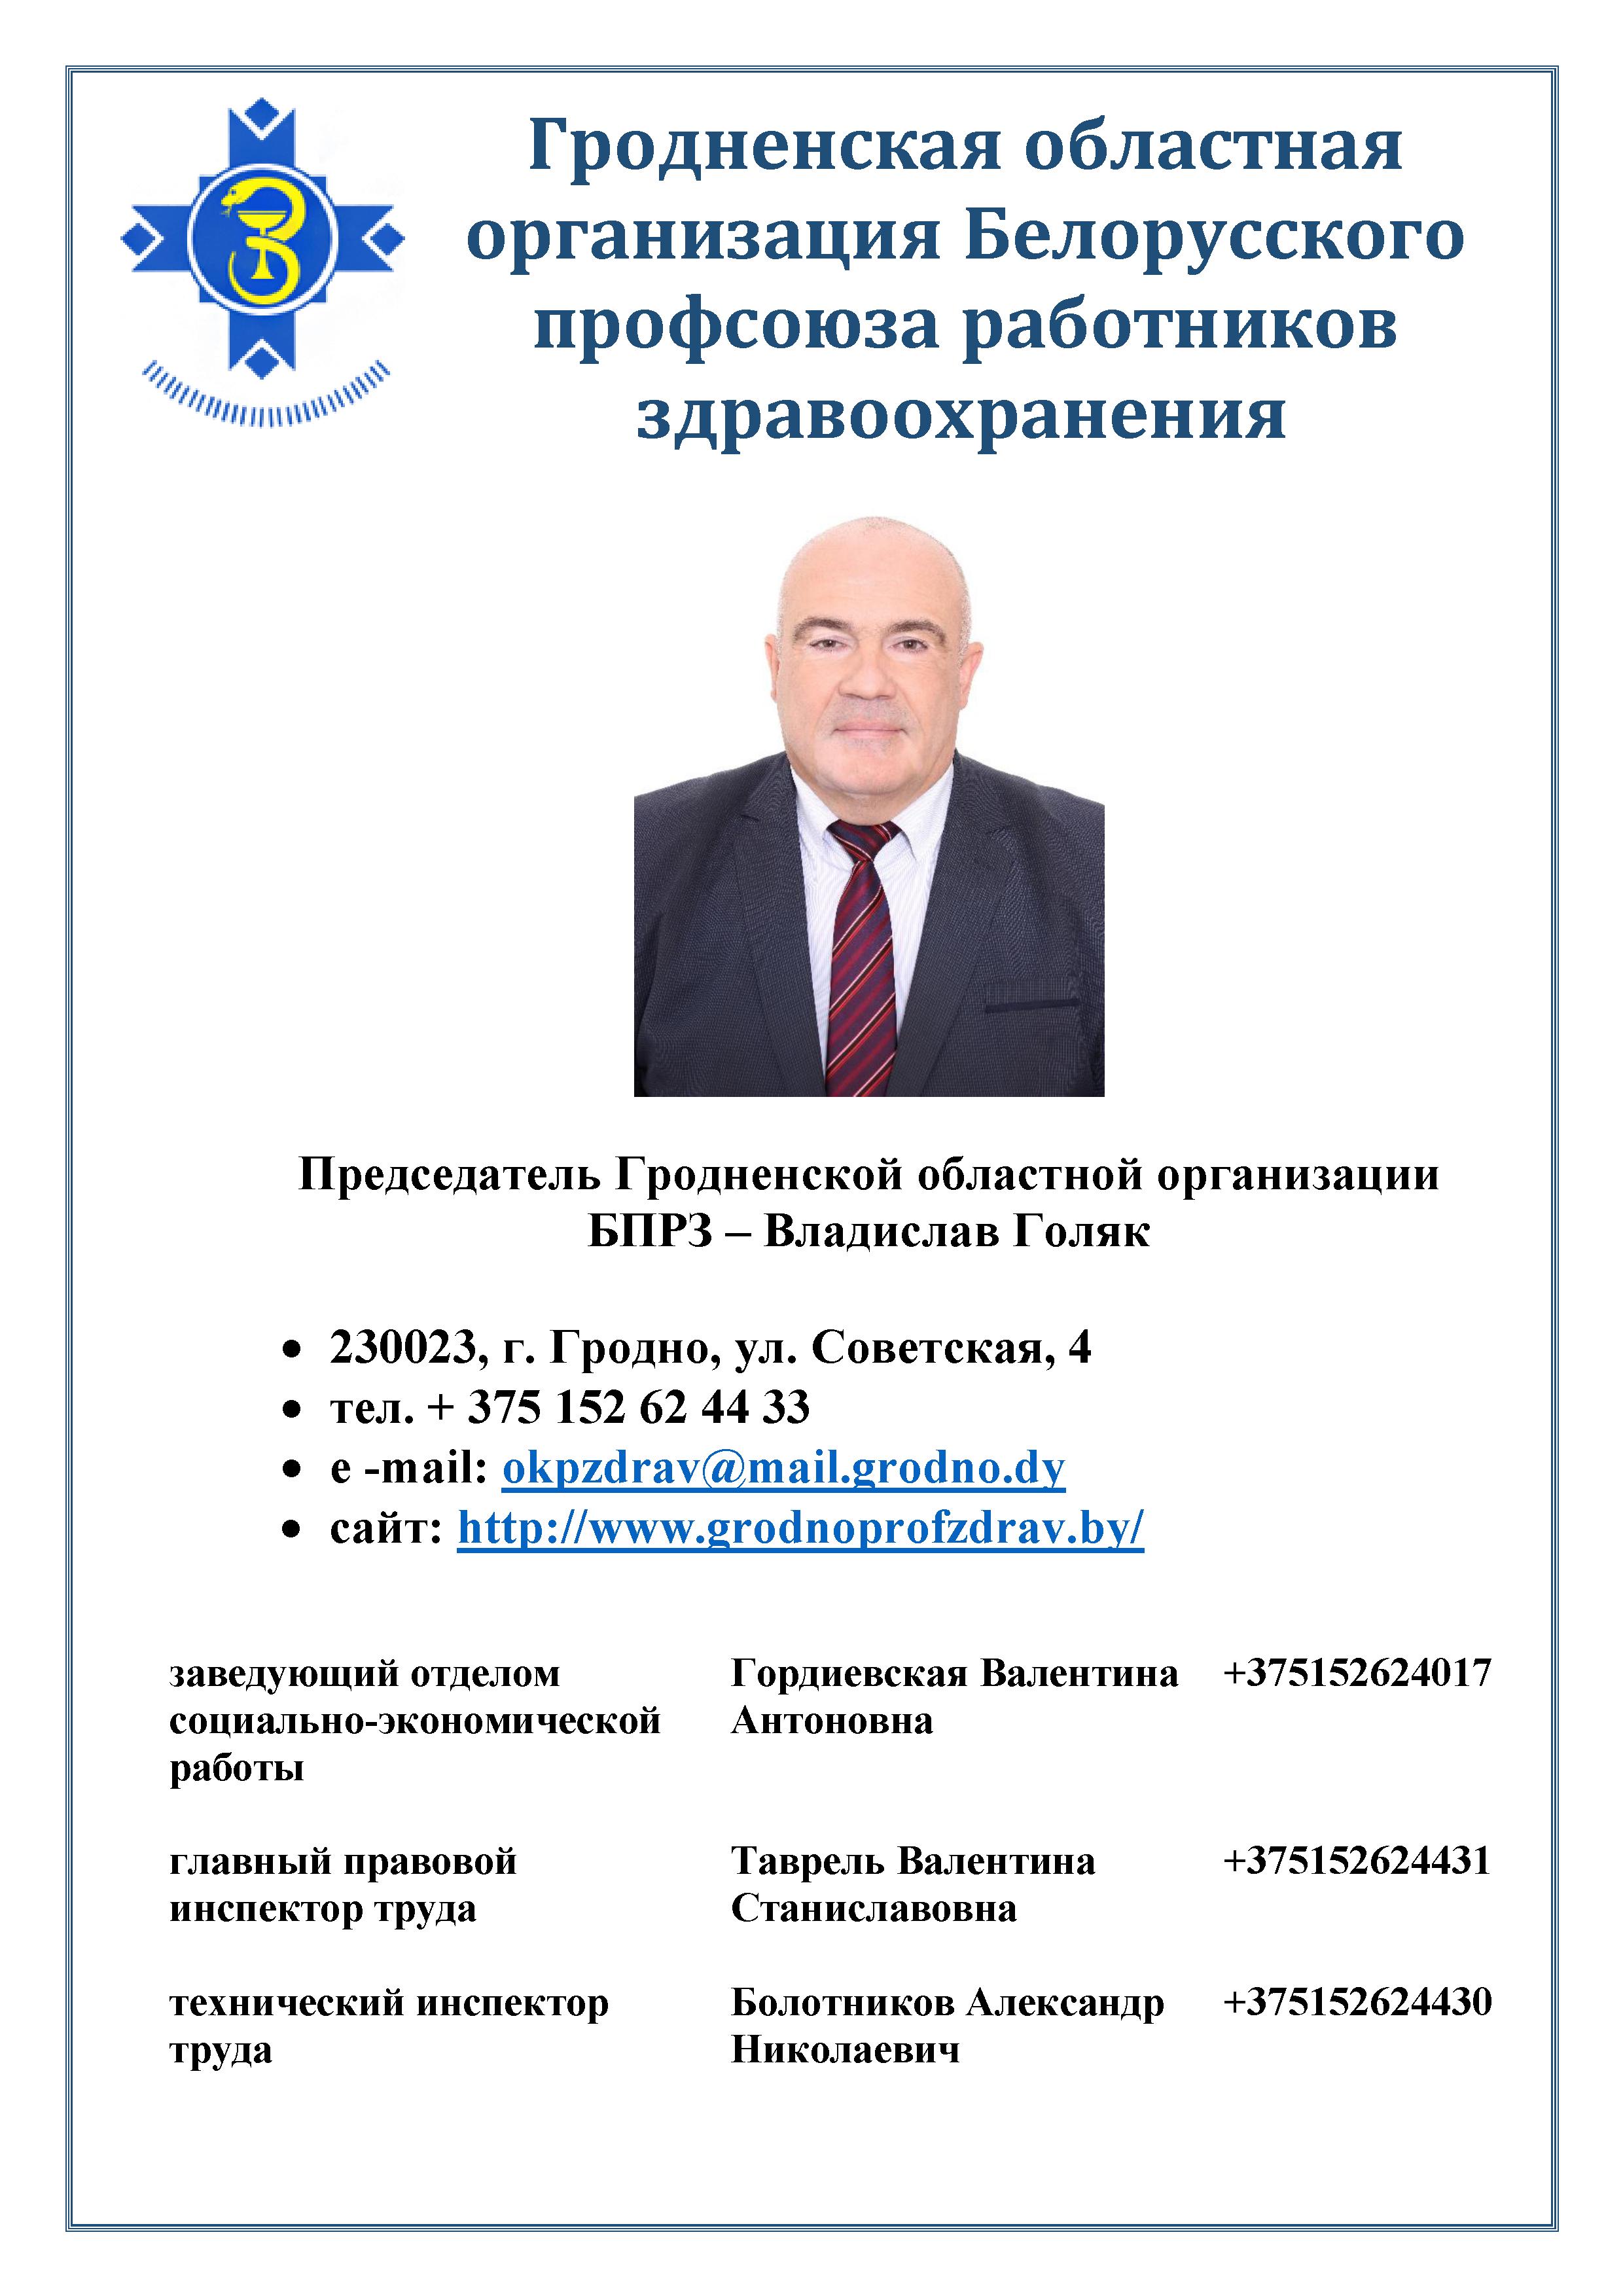 3 Информация о Гродненской областной организации Белорусского профсоюза работников здравоохранения 2